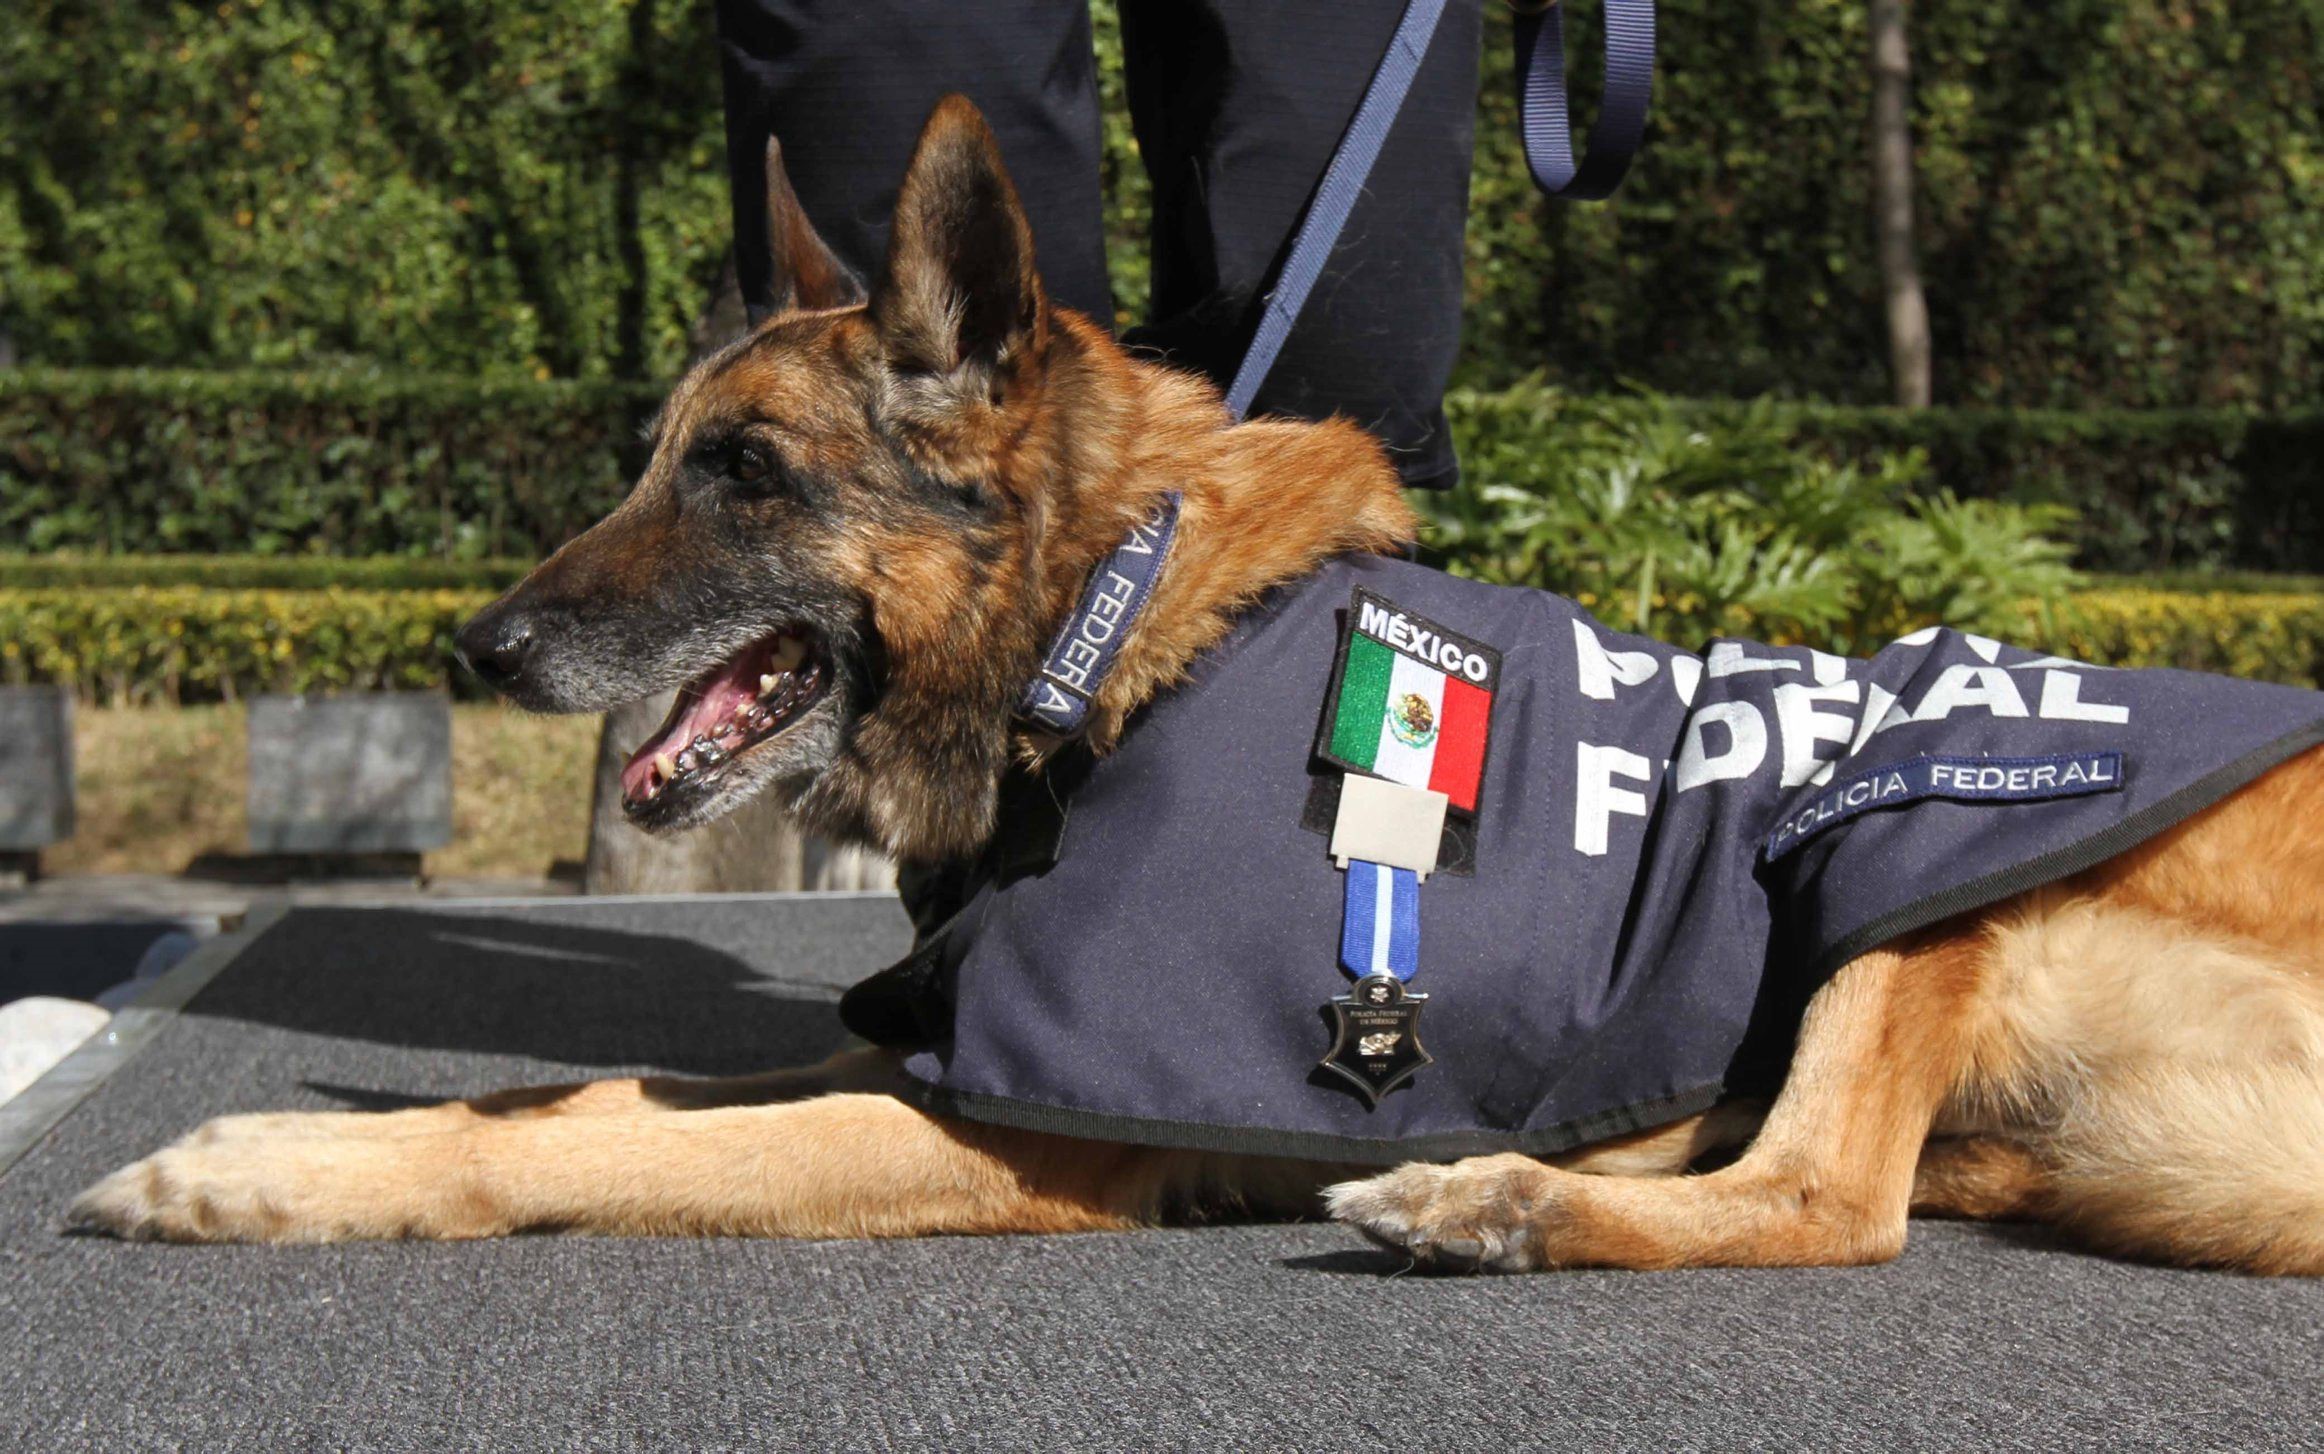 La Policía Federal posee 216 perros entrenados que todos los días operan contra el narcotráfico en aeropuertos, terminales y aduanas. También cuenta con ejemplares para el rescate de personas o hallazgo de cadáveres.